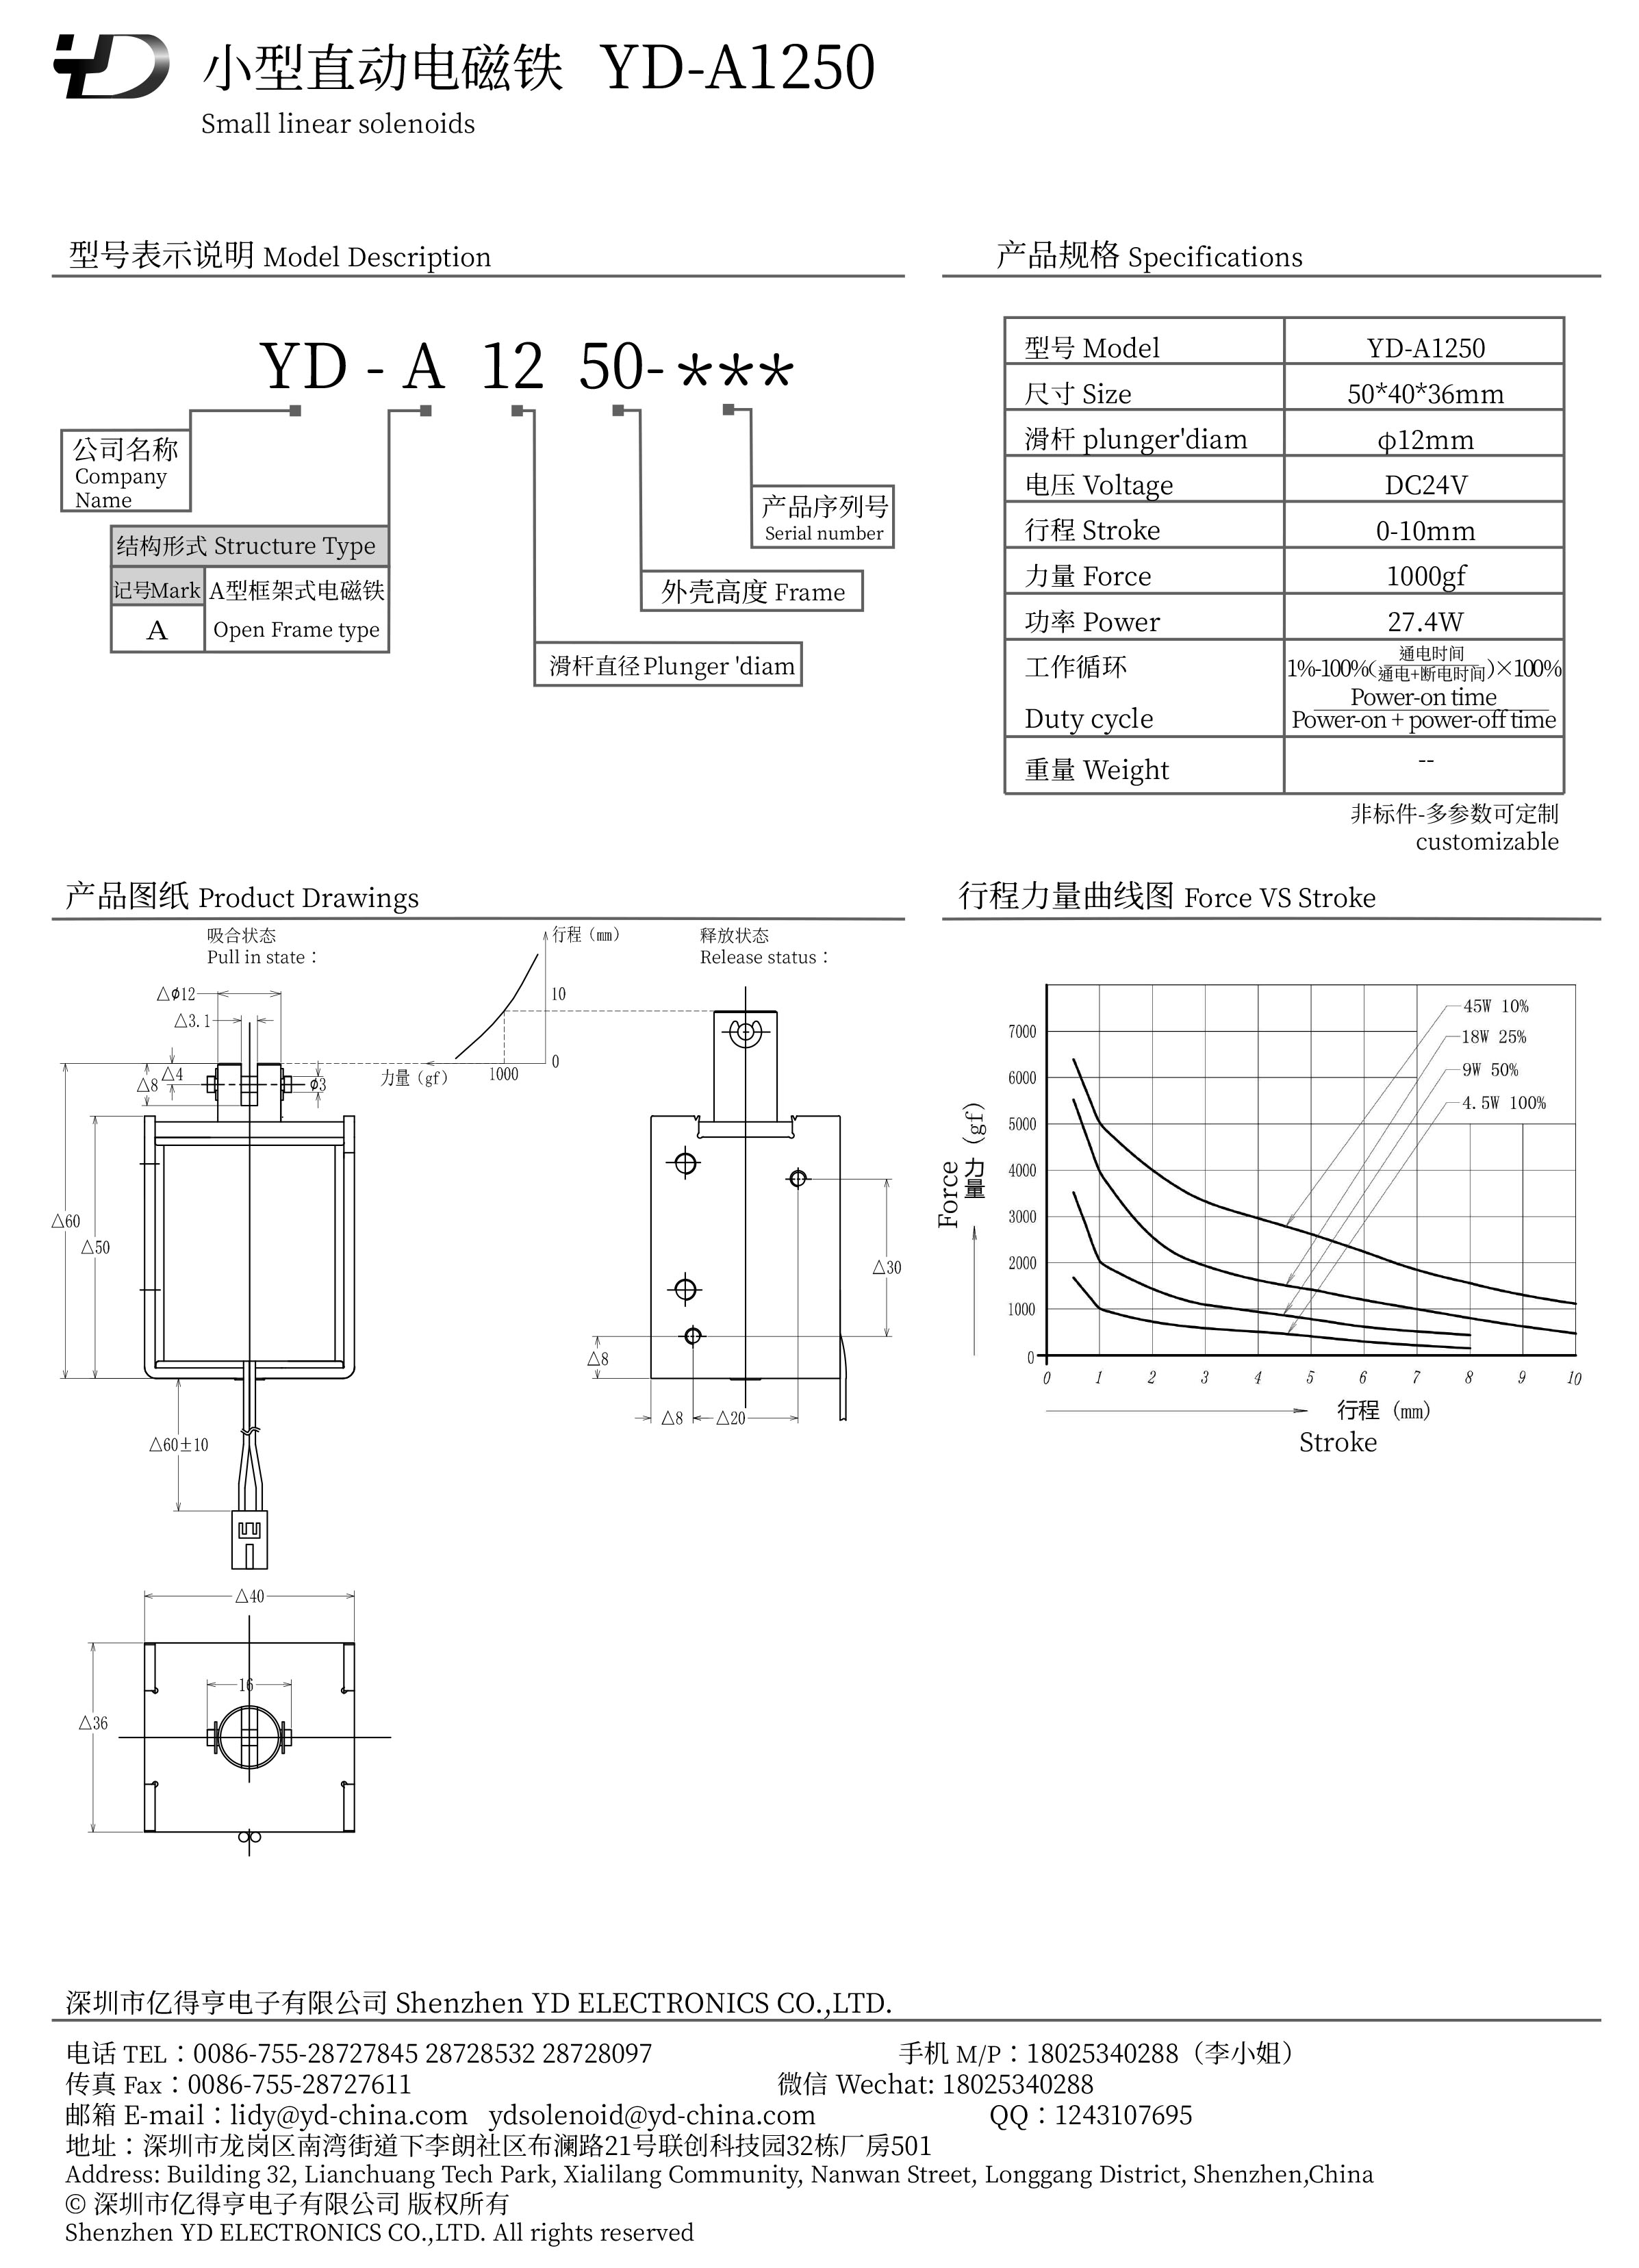 YD-A1250-PDF.jpg